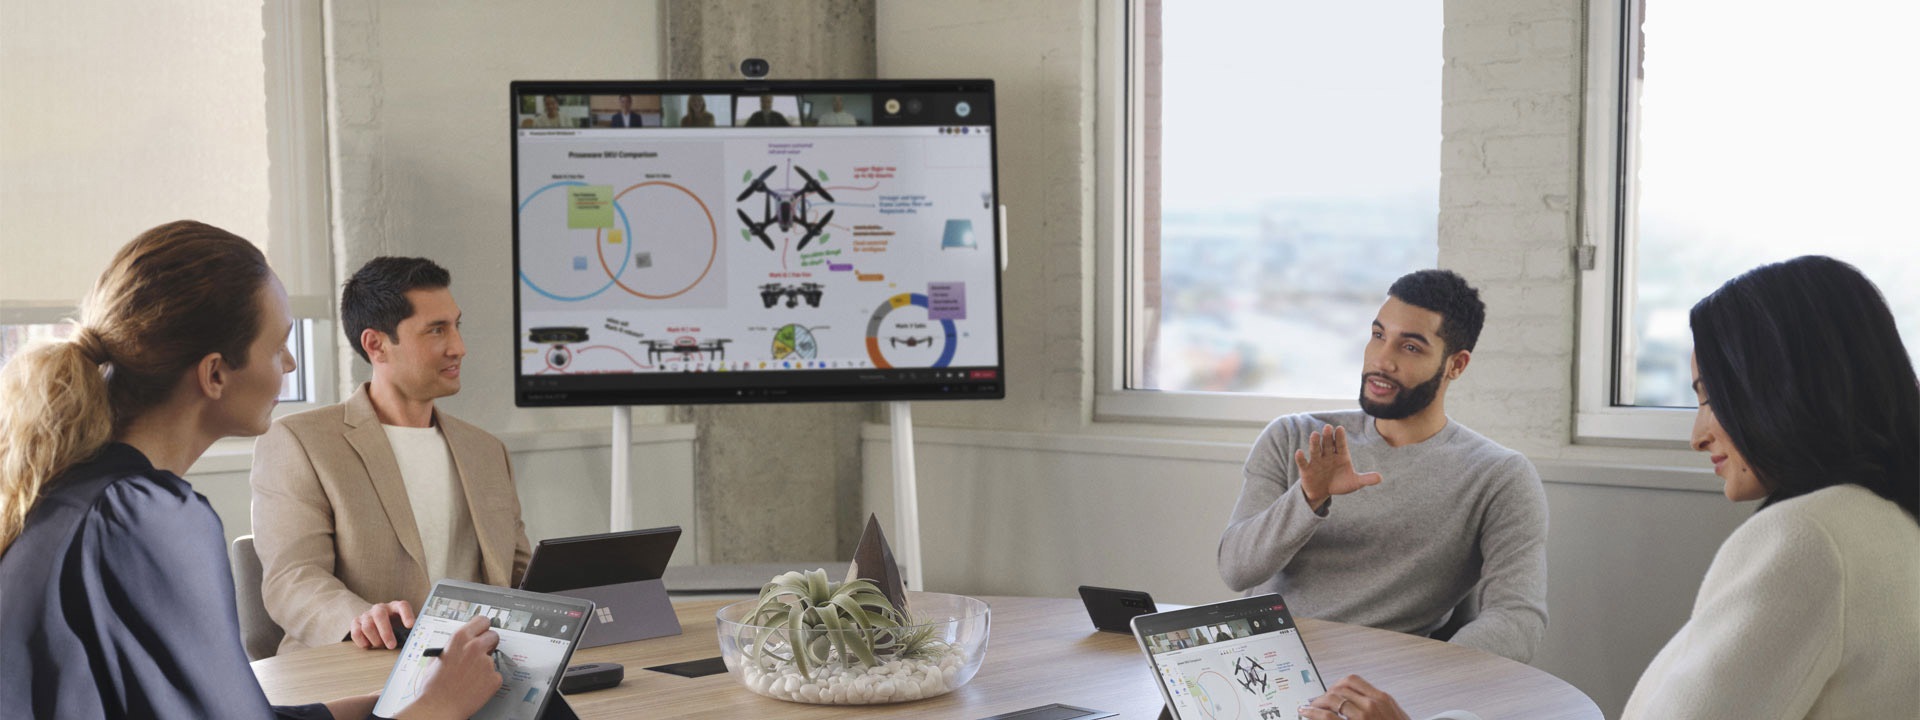 Fire kolleger i et mødelokale foretager et Microsoft Teams-møde med forskellige Surface-enheder